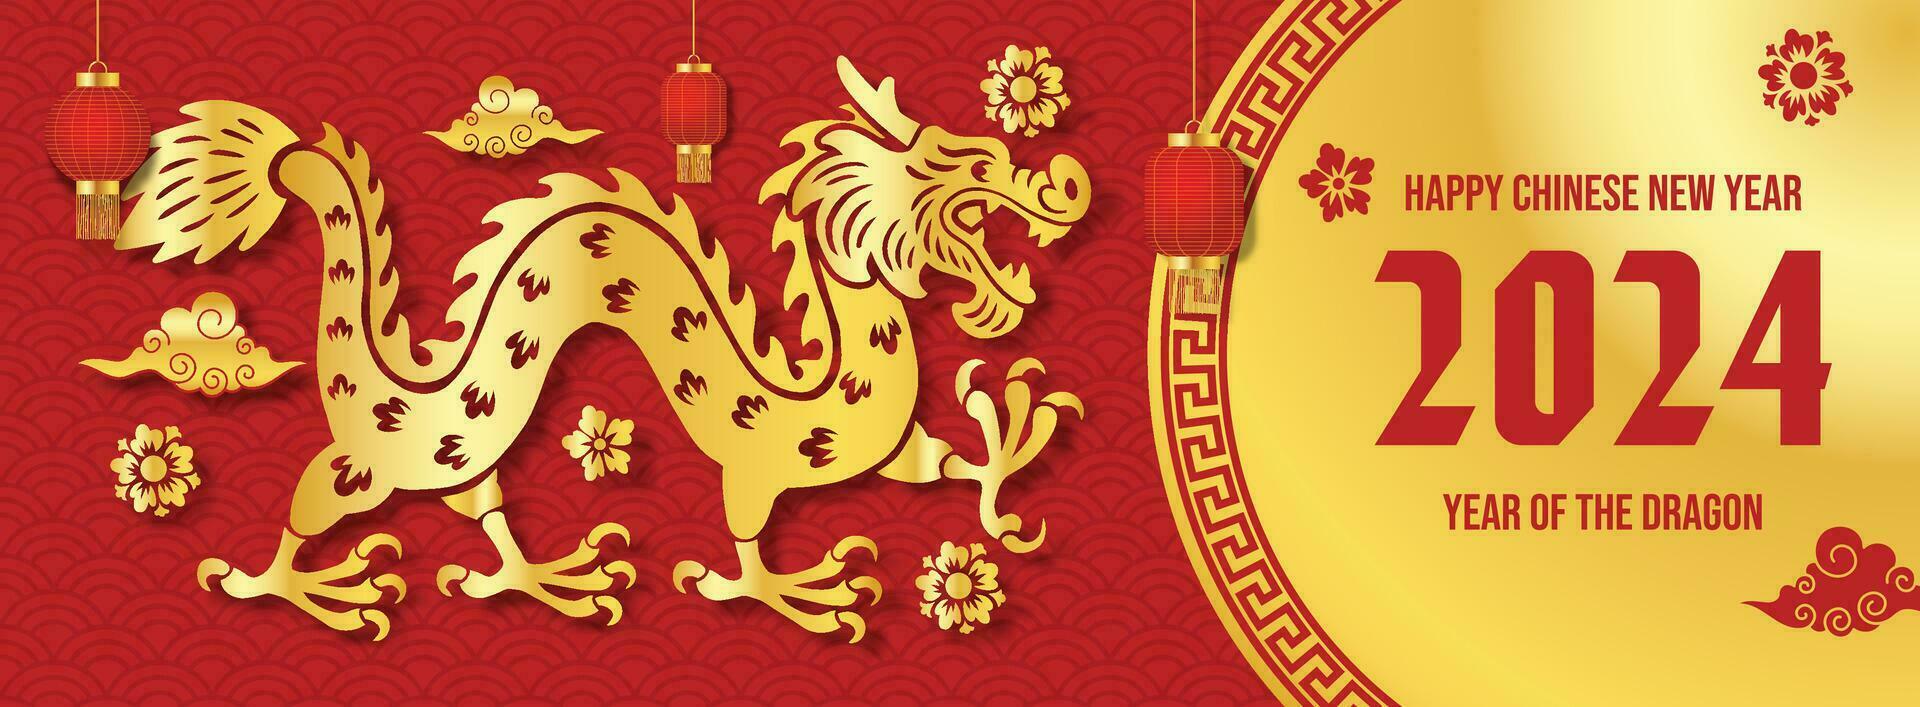 Lycklig kinesisk ny år 2024 traditionell baner med guld drake och asiatisk prydnad vektor